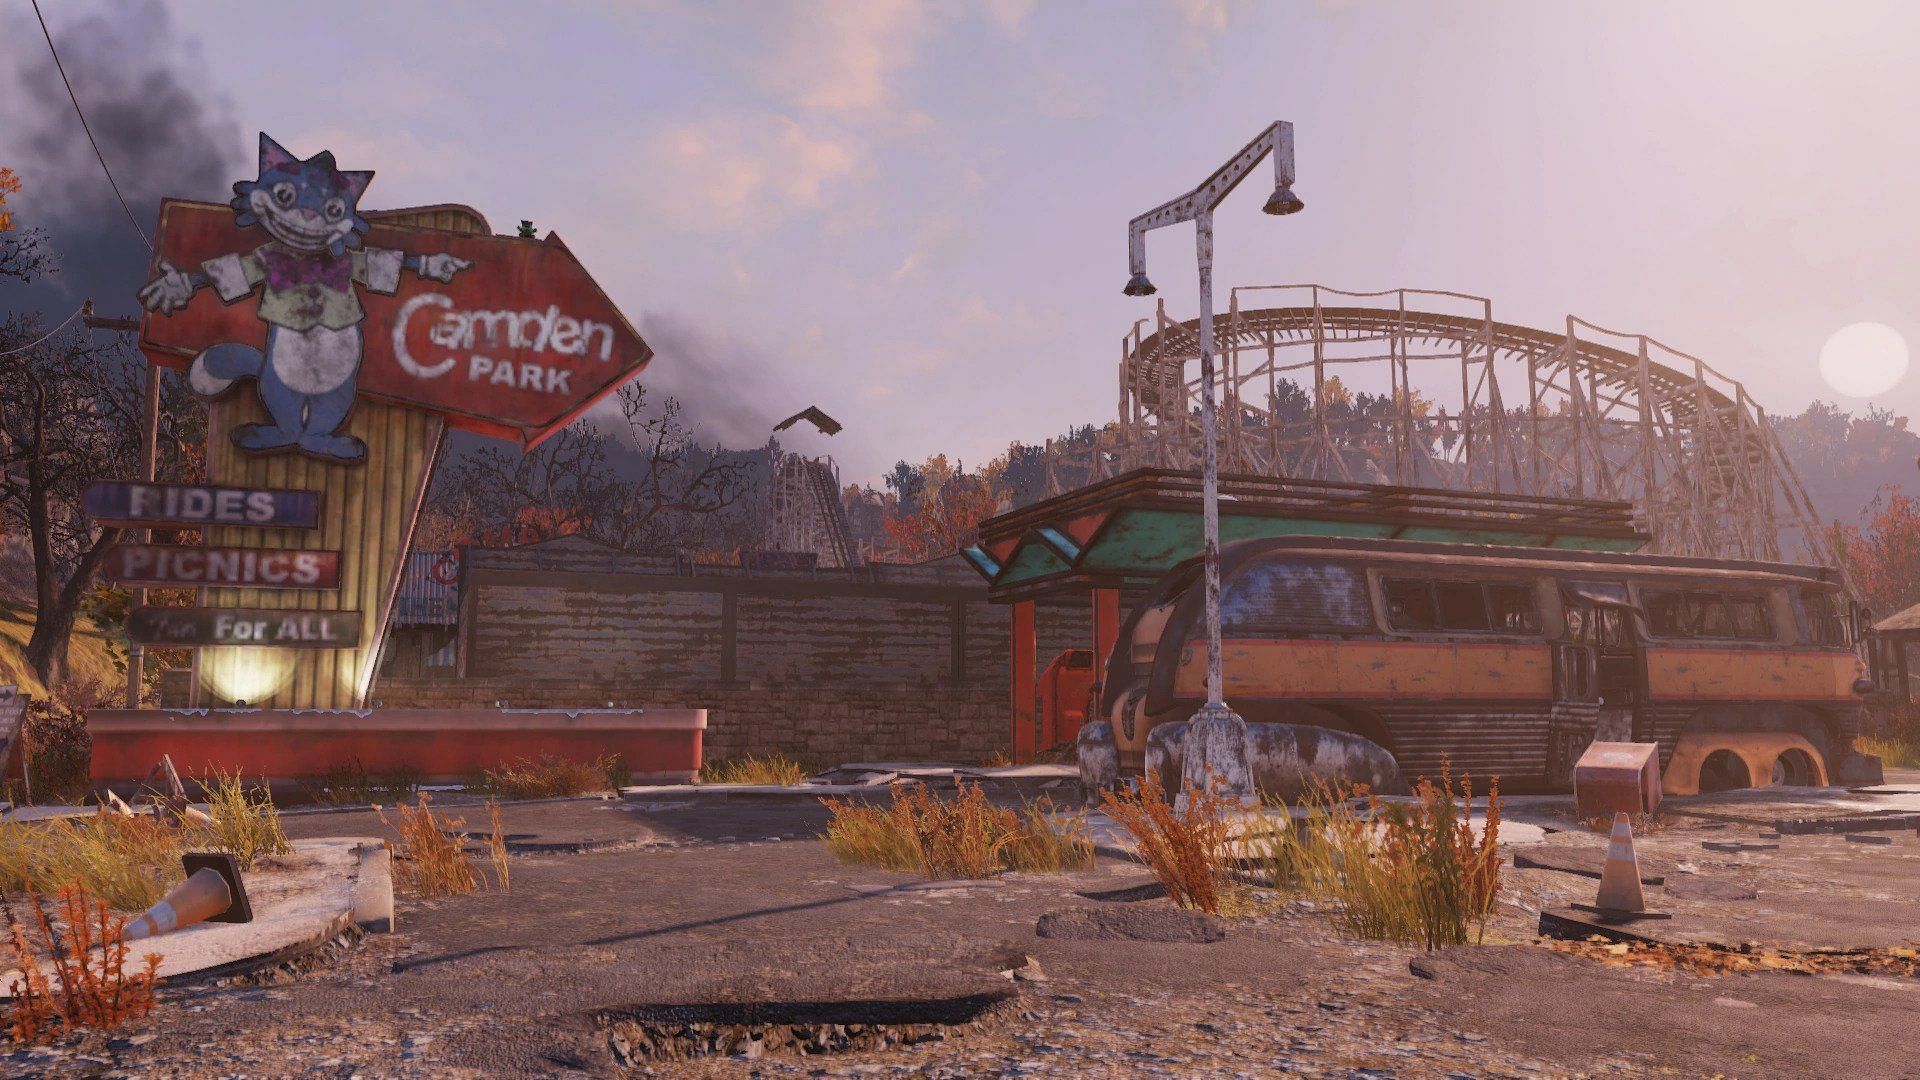 Camden Park as seen in Fallout 76 (Image via Bethesda)